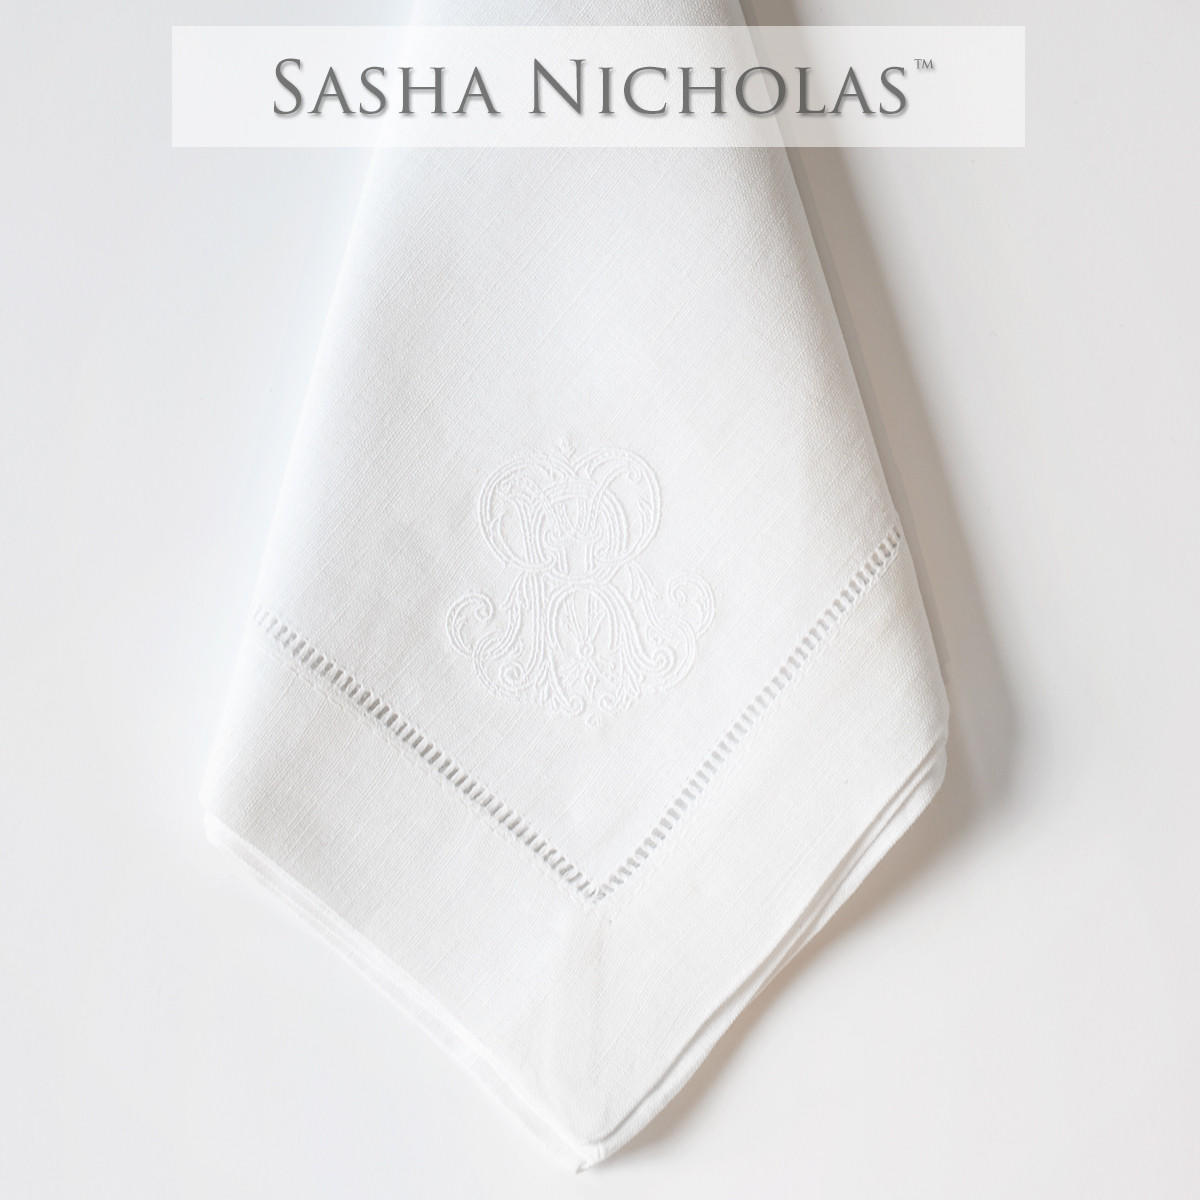 Morford-treadway Sasha Nicholas White Linen Dinner Napkin, Couture Monogram, Morford-Treadway SNLIN100, Sasha Nicholas